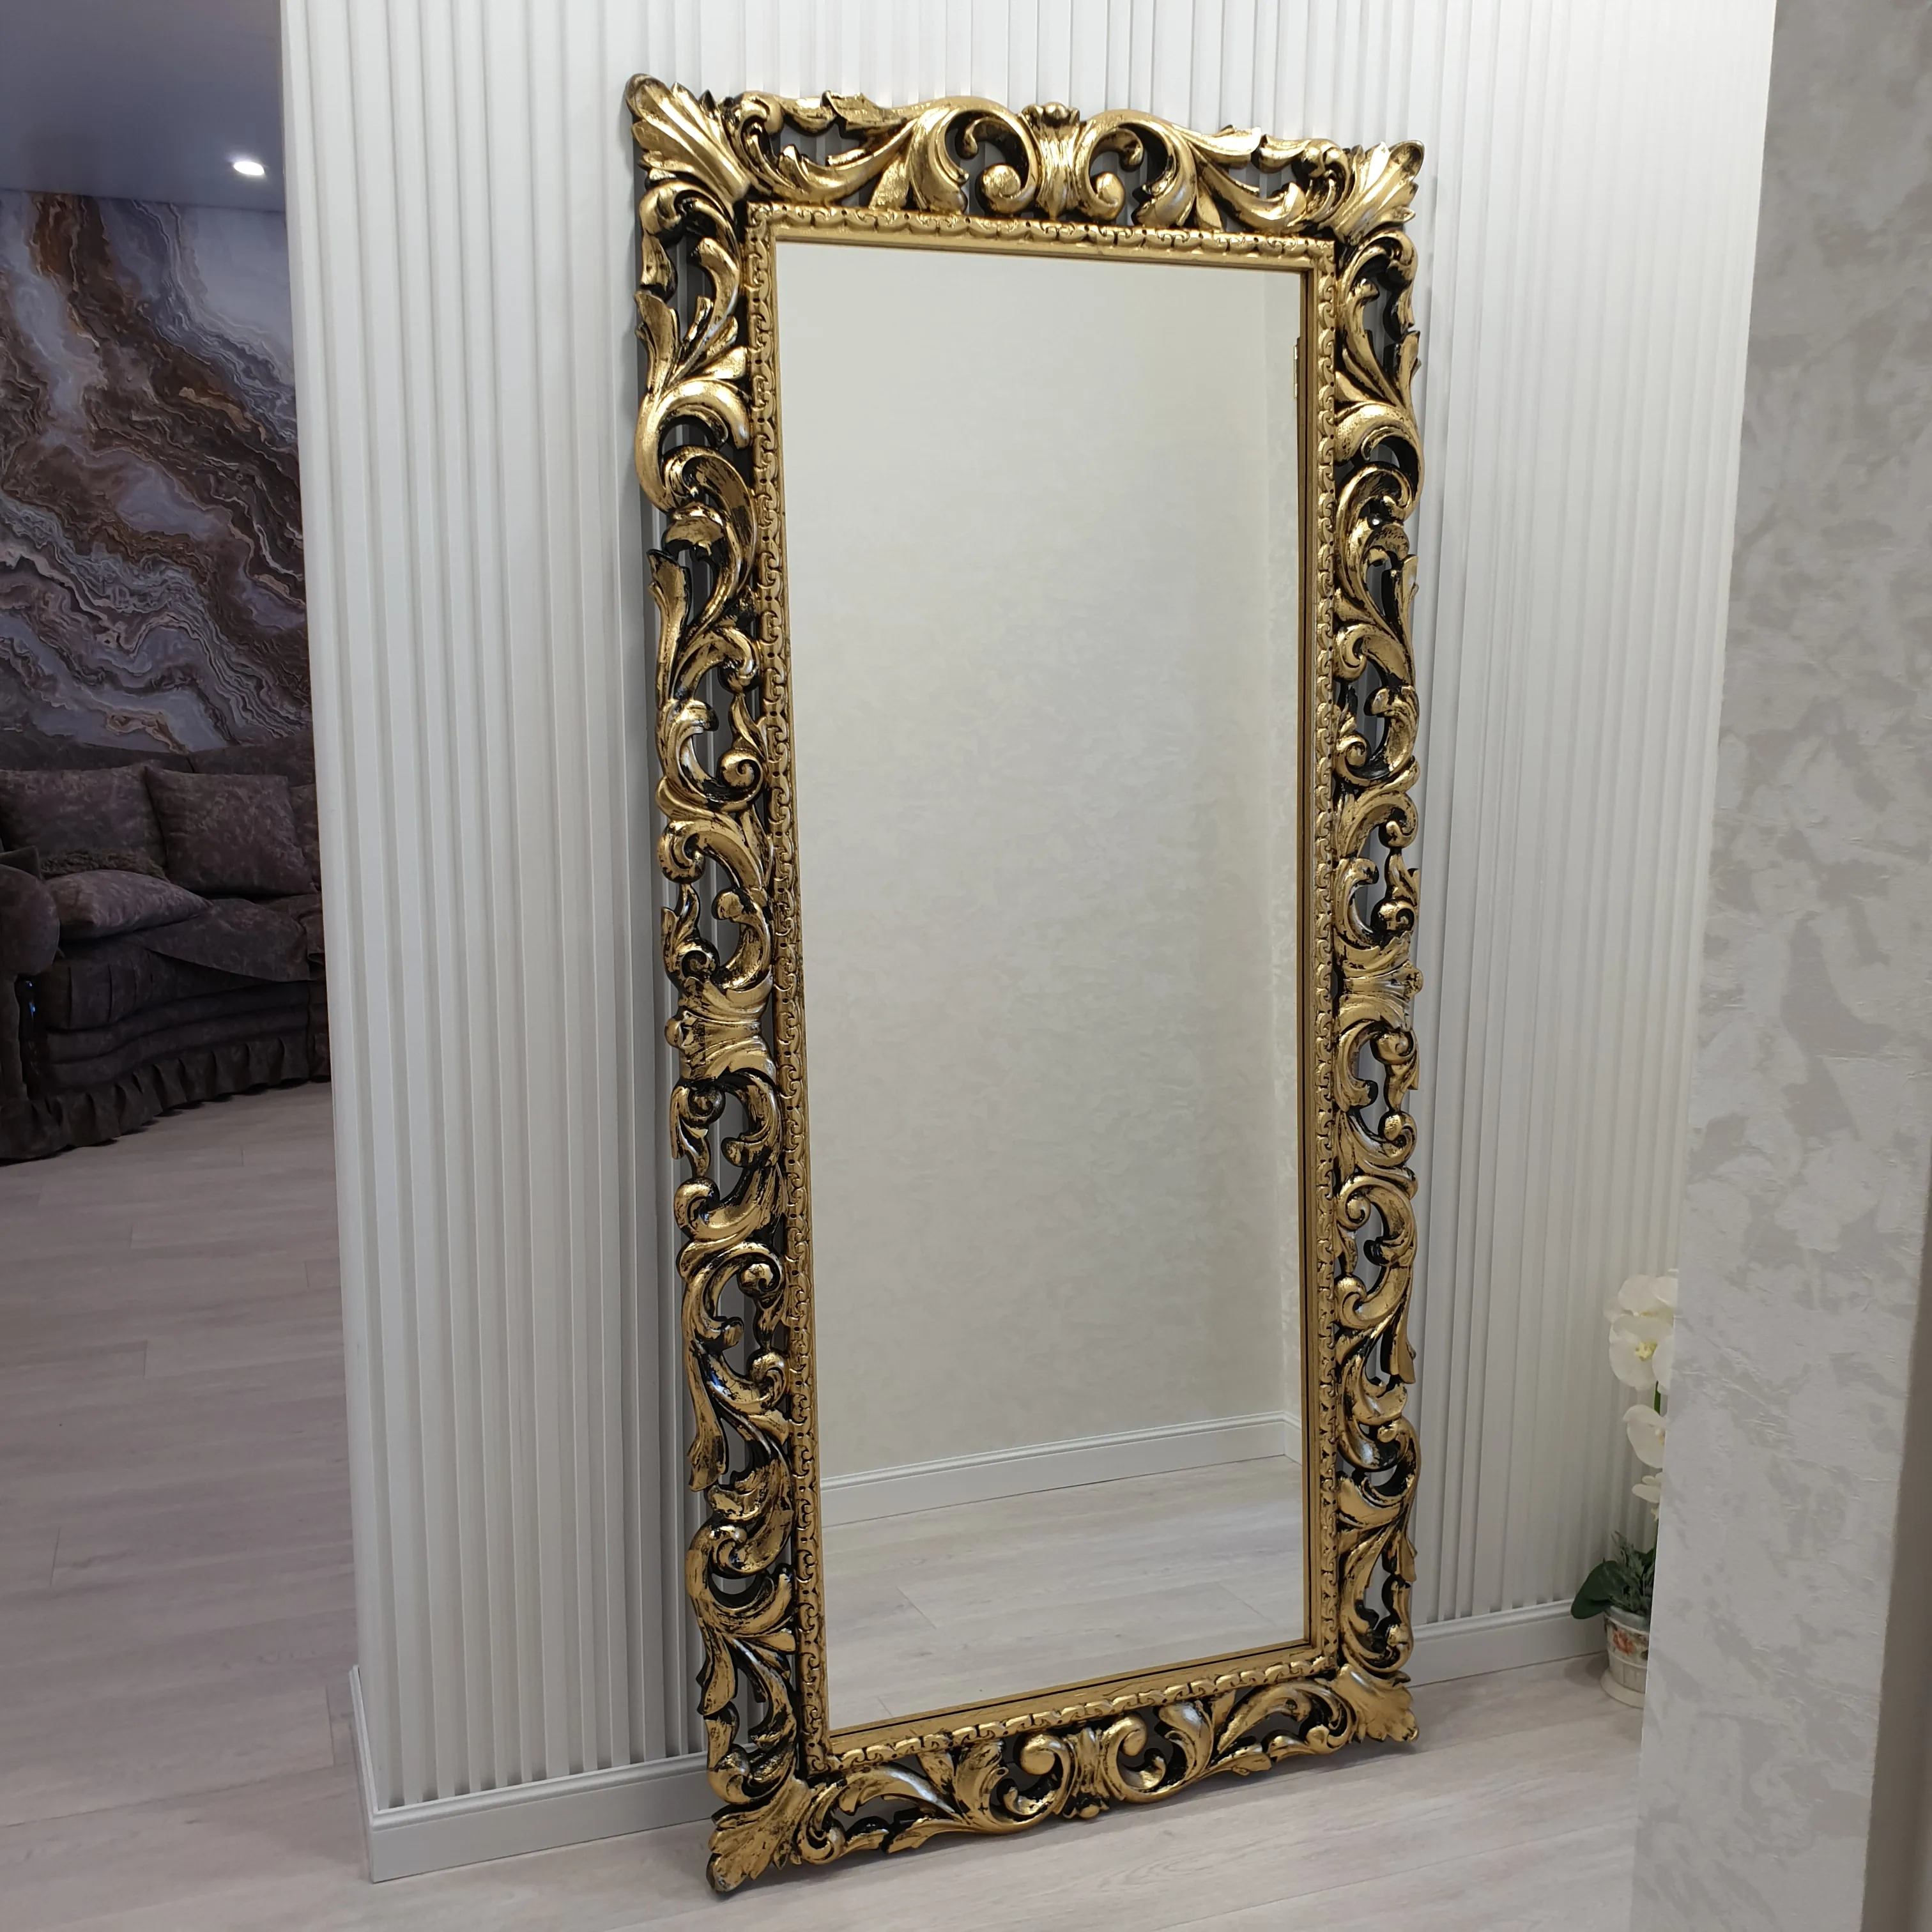 Рама под Зеркало(без зеркала) настенное Резное Из дерева Под золото Для дома